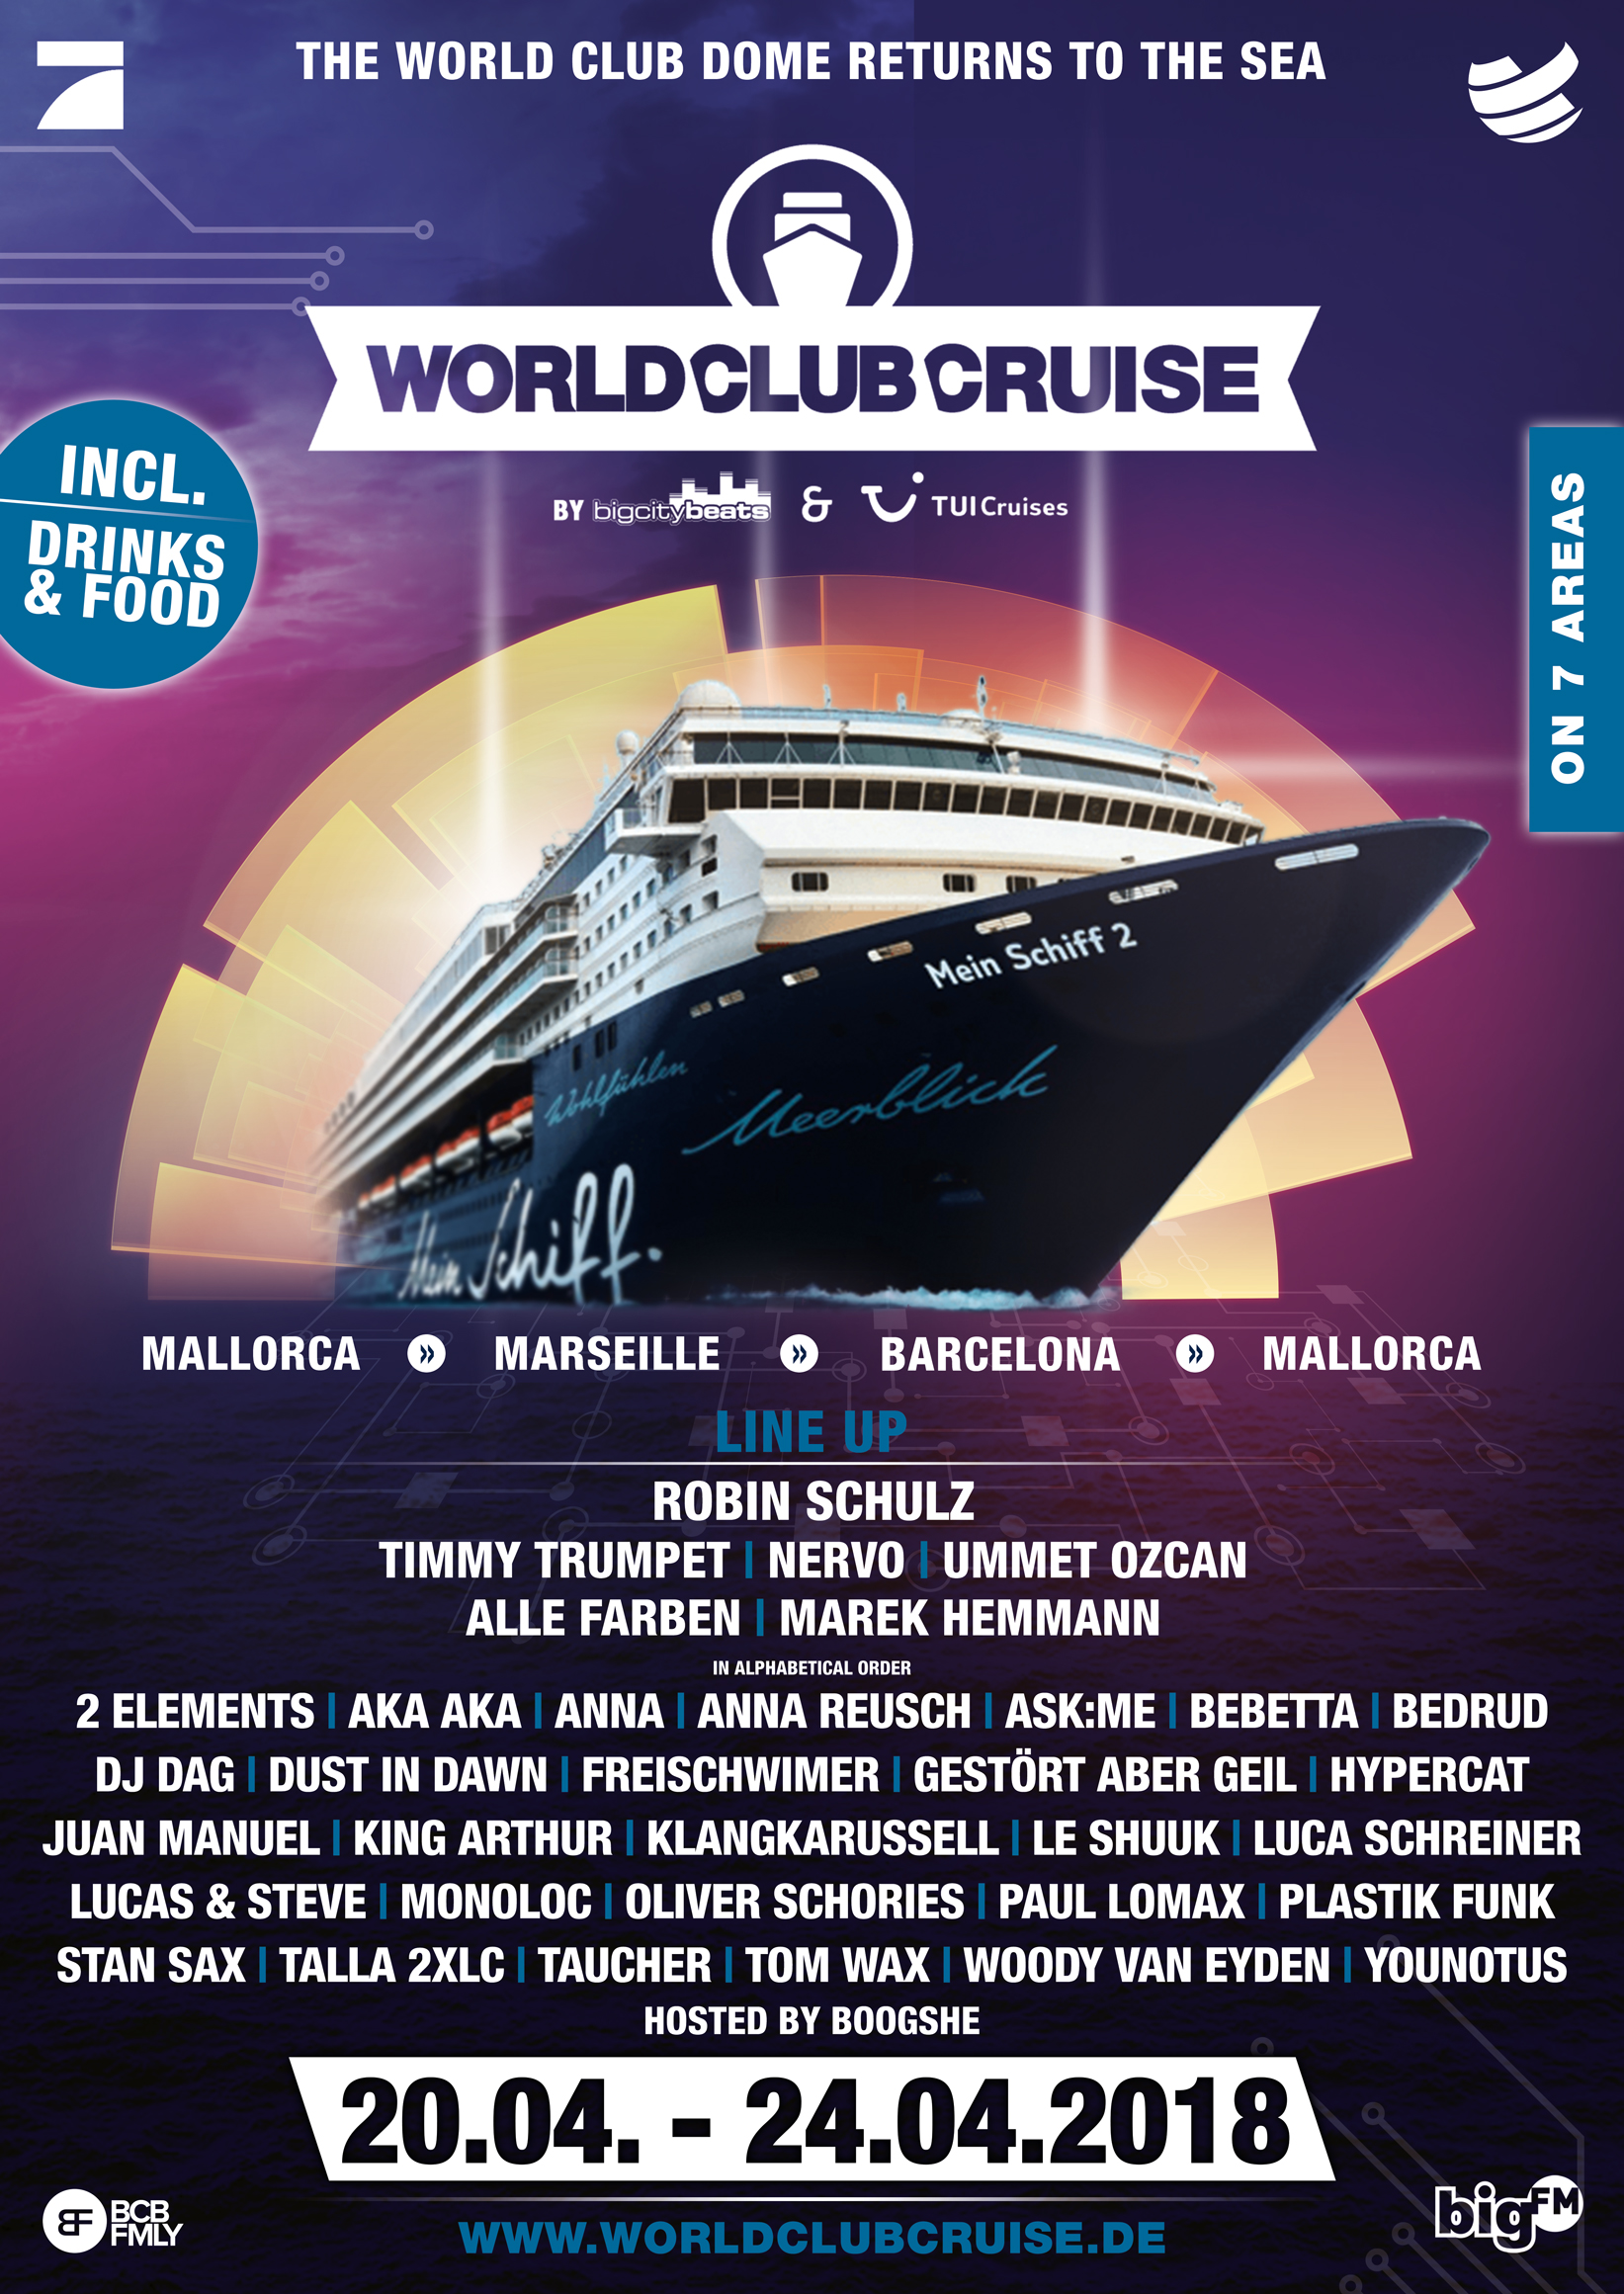 Das offizielle Plakat der World Club Cruise